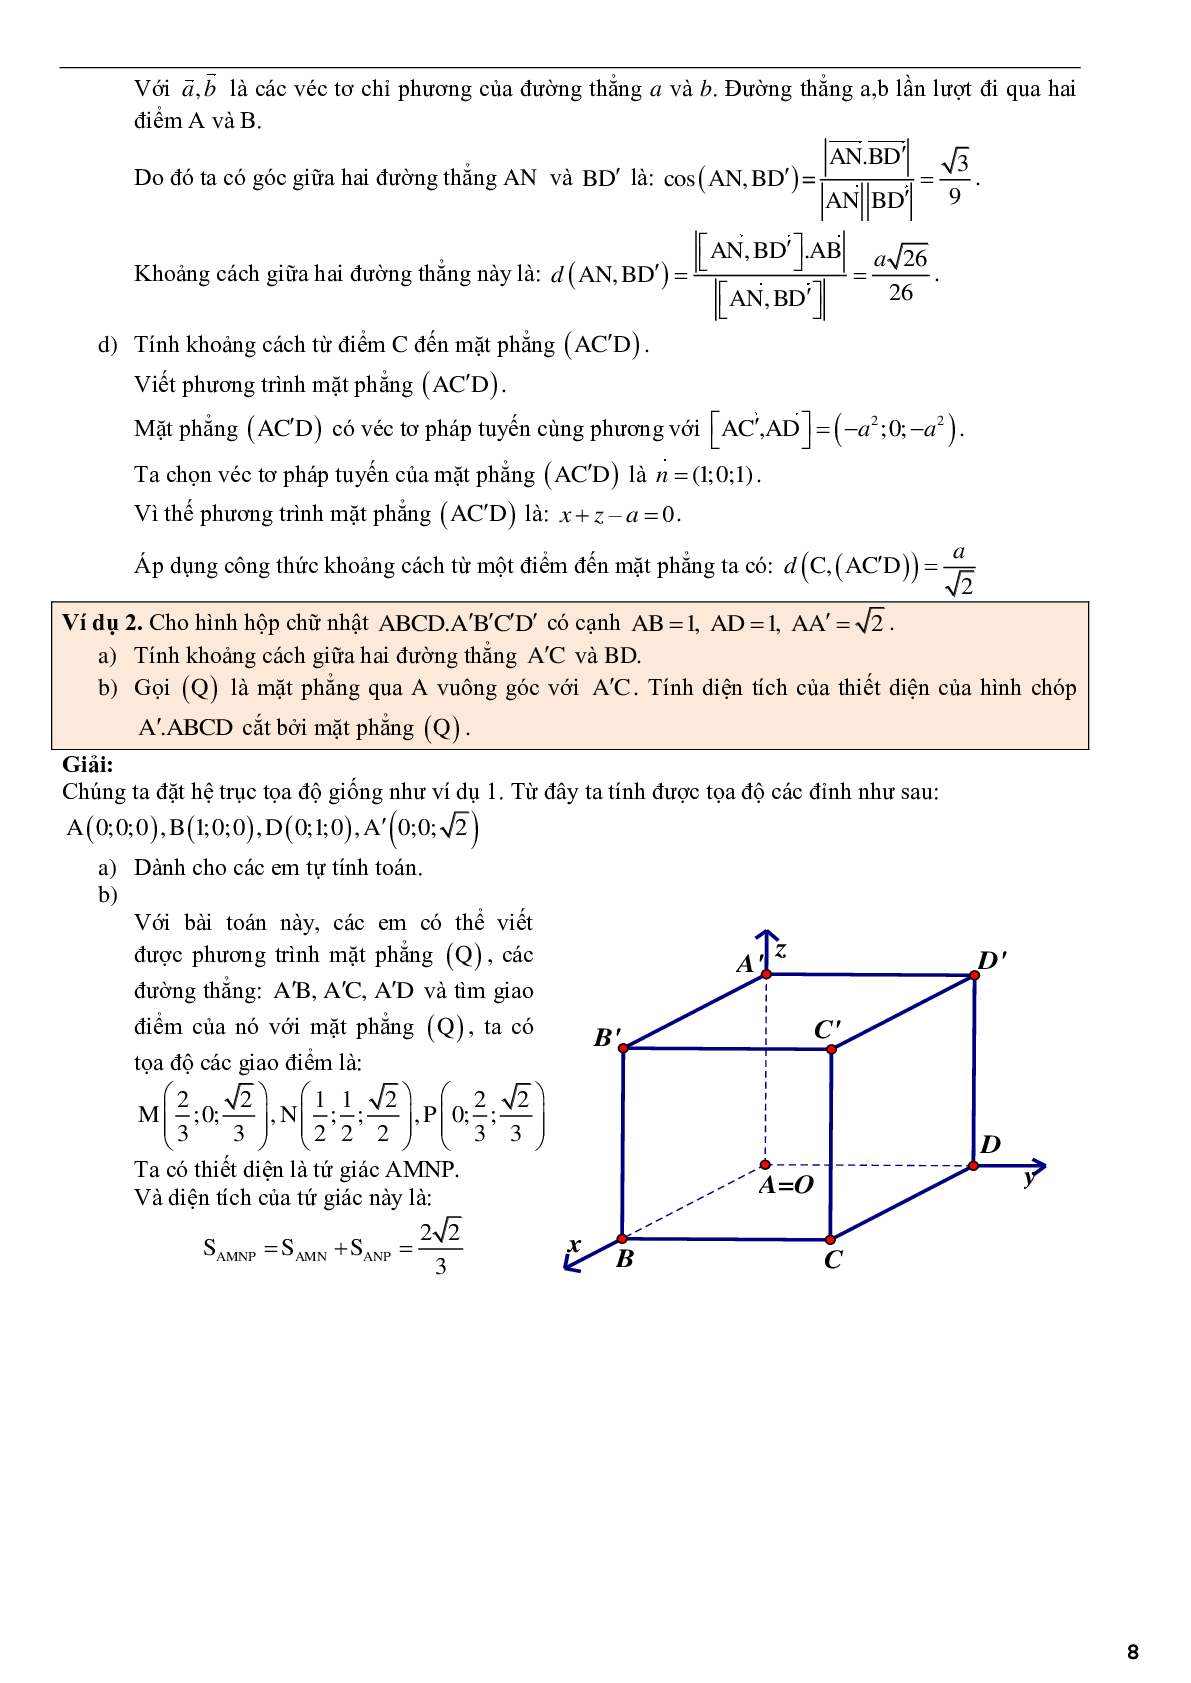 Ứng dụng phương pháp tọa độ để giải bài toán hình học không gian - phần 2 (trang 8)